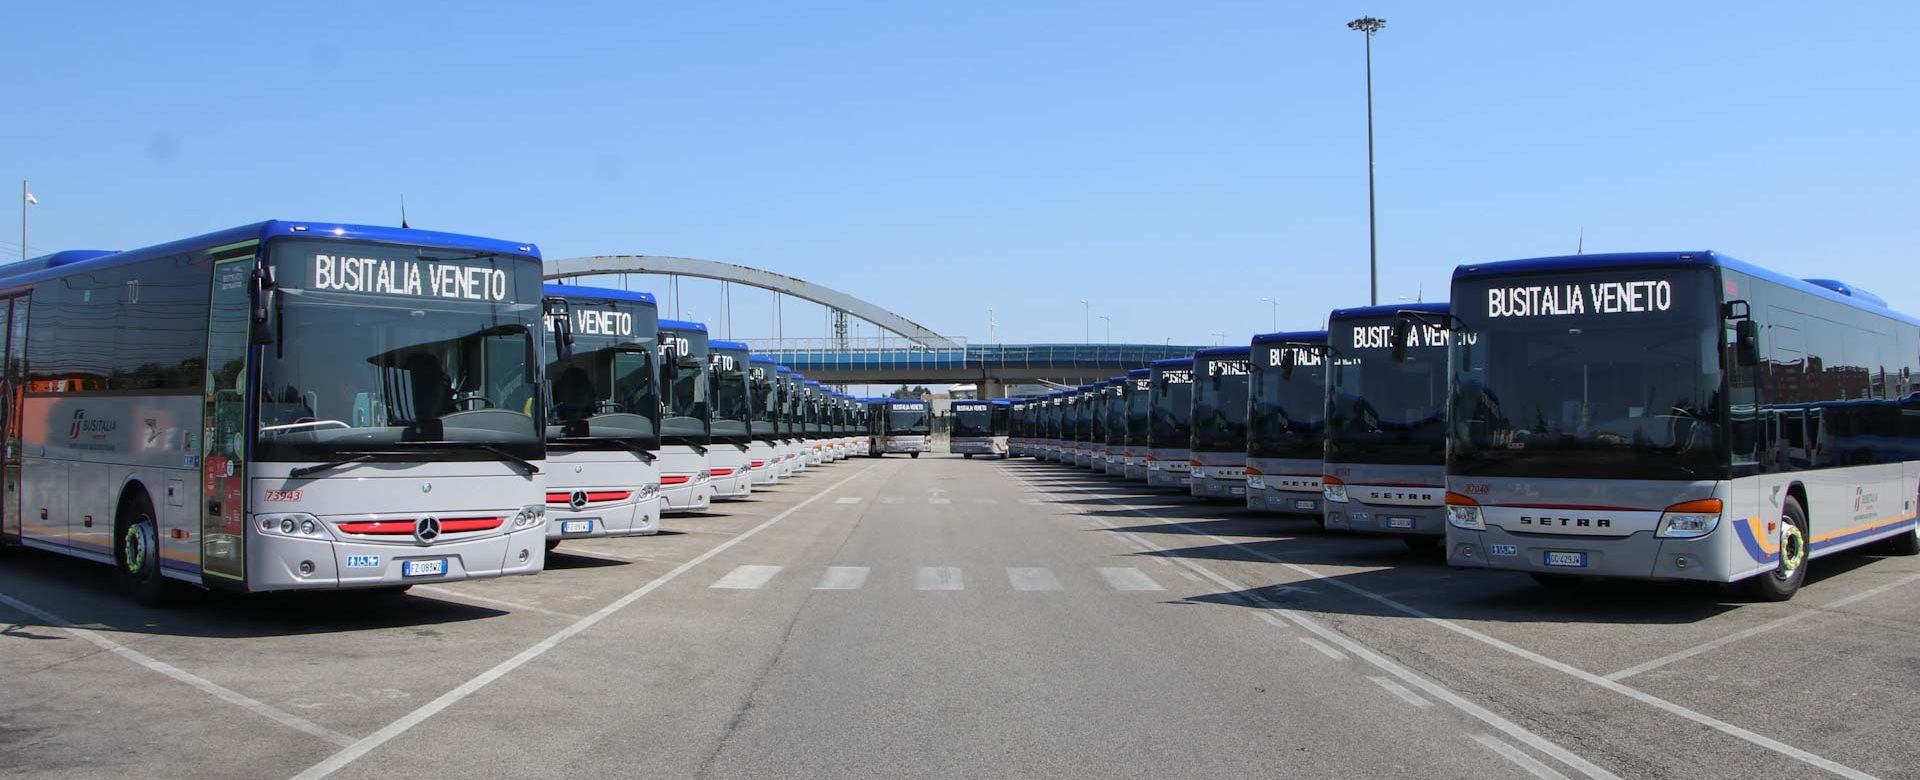 Autobus parcheggiati in fila